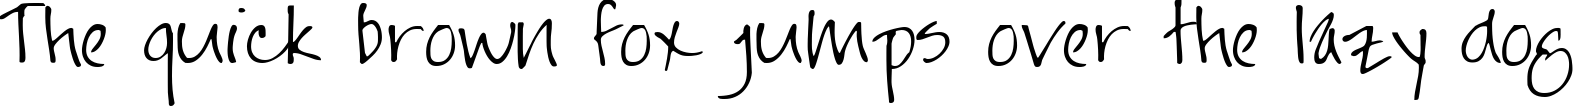 Пример написания шрифтом Hand текста на английском